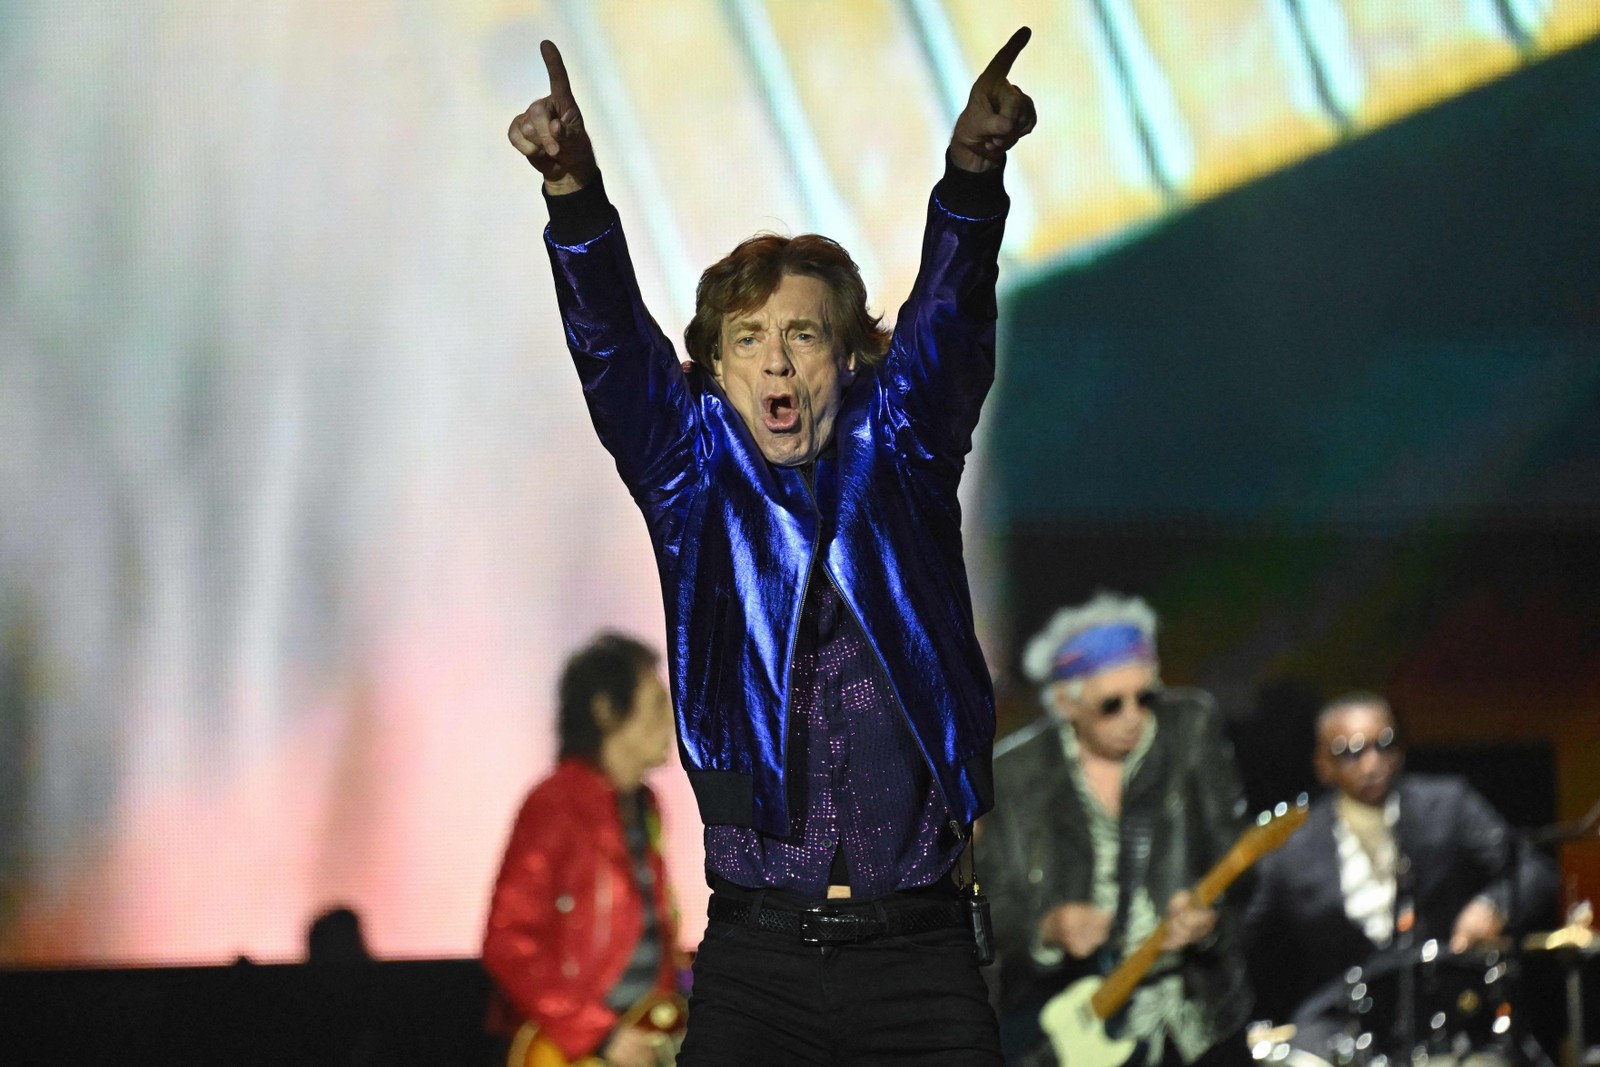 Os Rolling Stones, de Mick Jagger, se apresentaram na Veltins Arena em Gelsenkirchen, oeste da Alemanha, como parte da turnê que celebra os 60 anos de carreira da banda — Foto: INA FASSBENDER / AFP